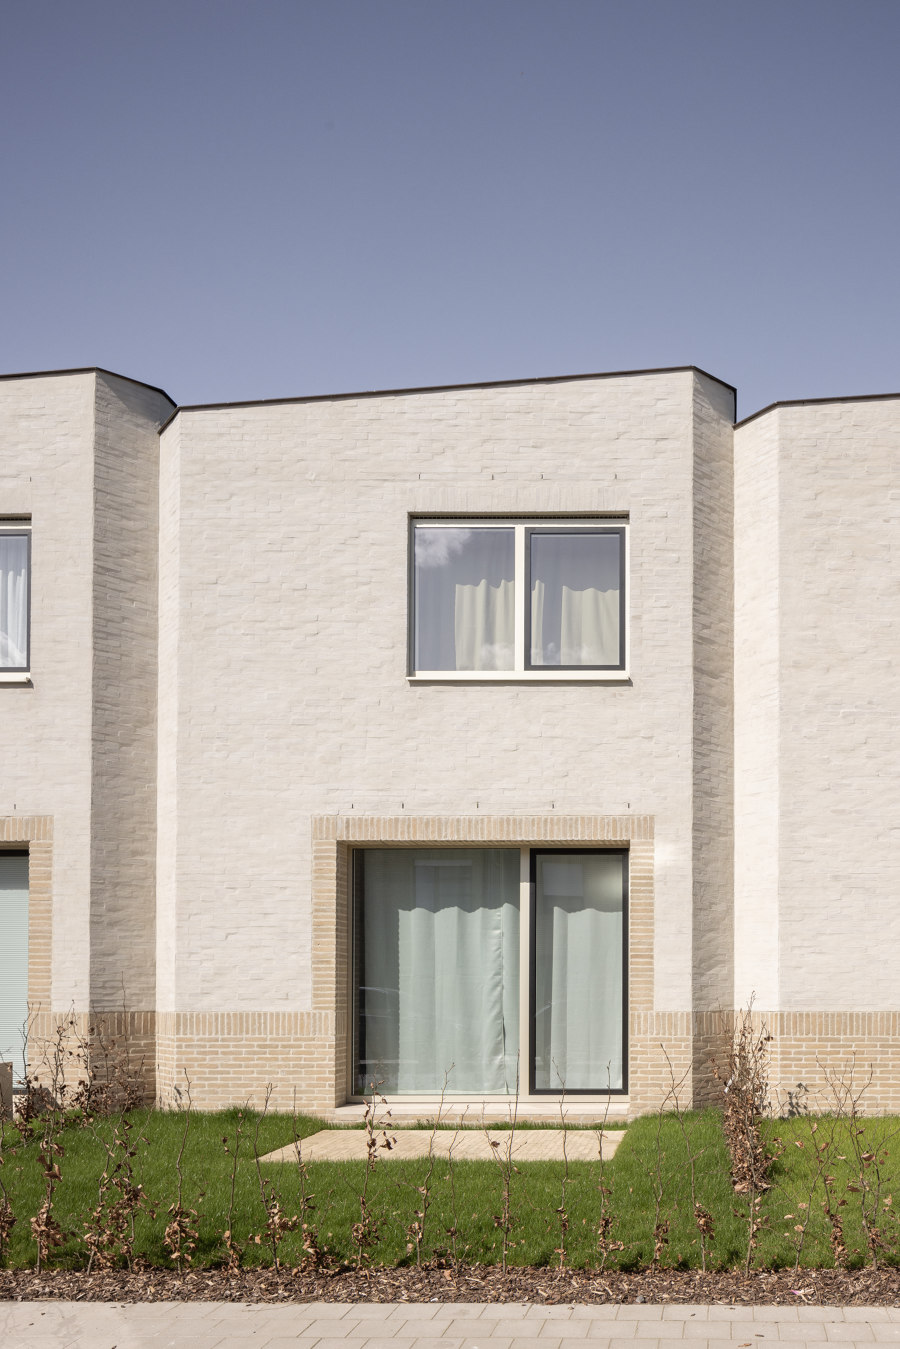 Ten Boomgaard Housing by WE-S architecten | Apartment blocks